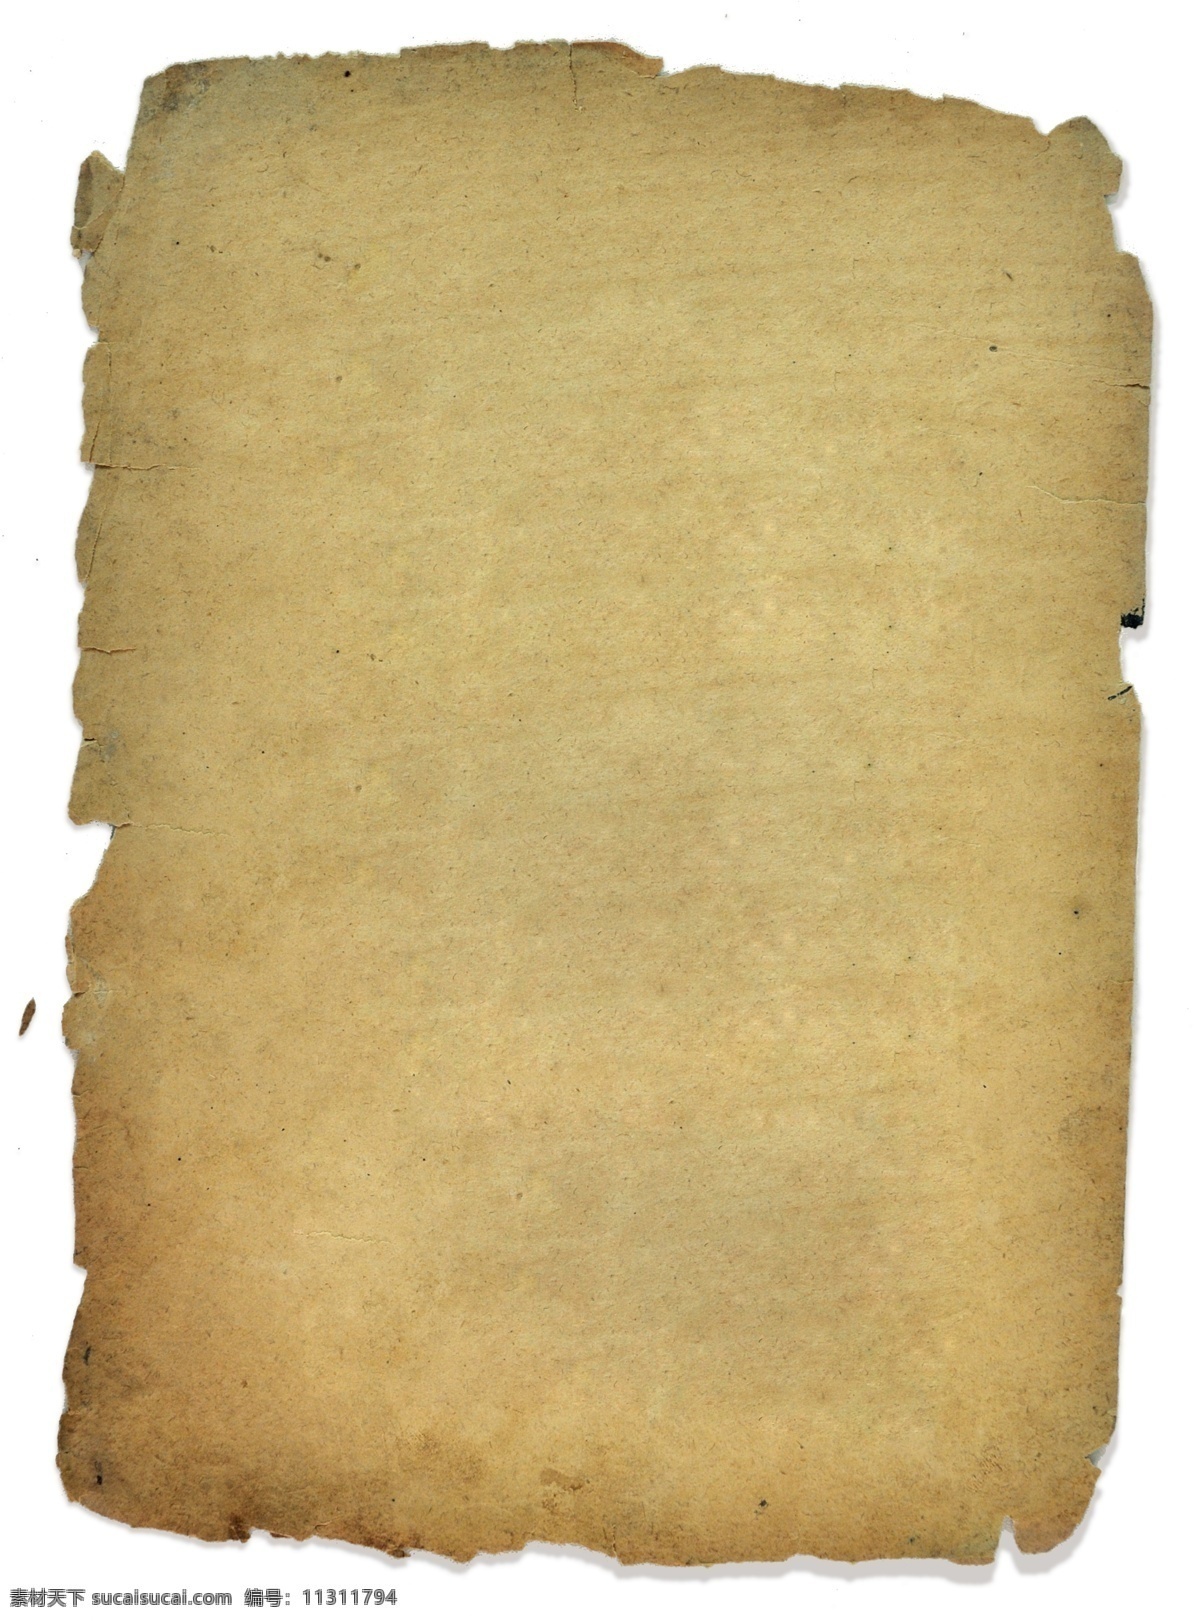 古老牛皮纸 牛皮纸 真实材质 背景素材 分层 源文件